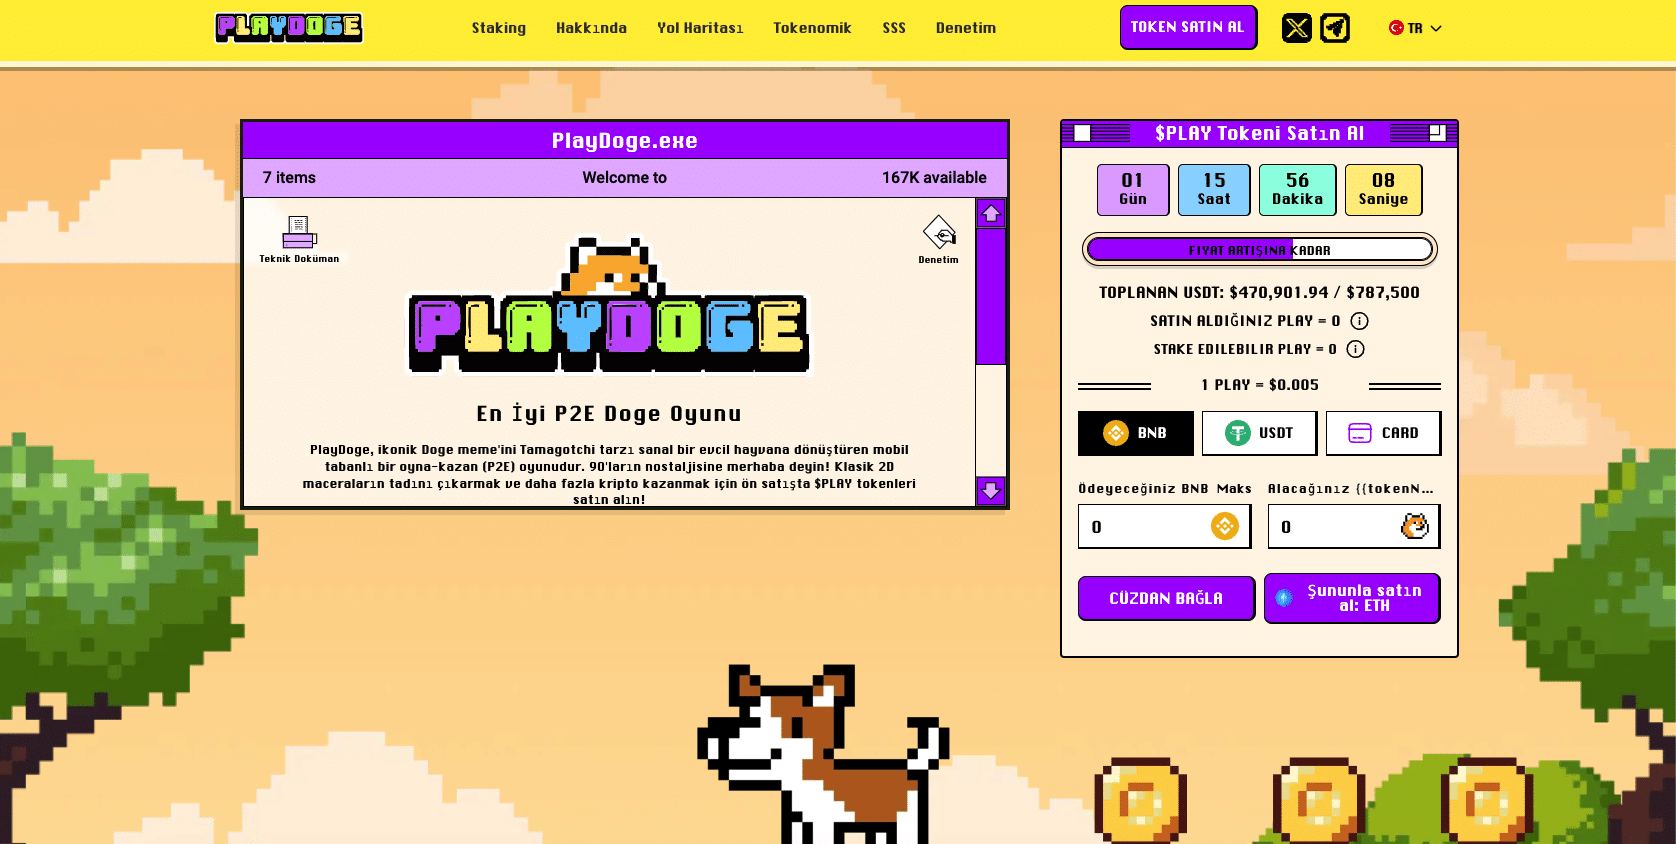 playdoge - coinbase yeni listelenecek coinler